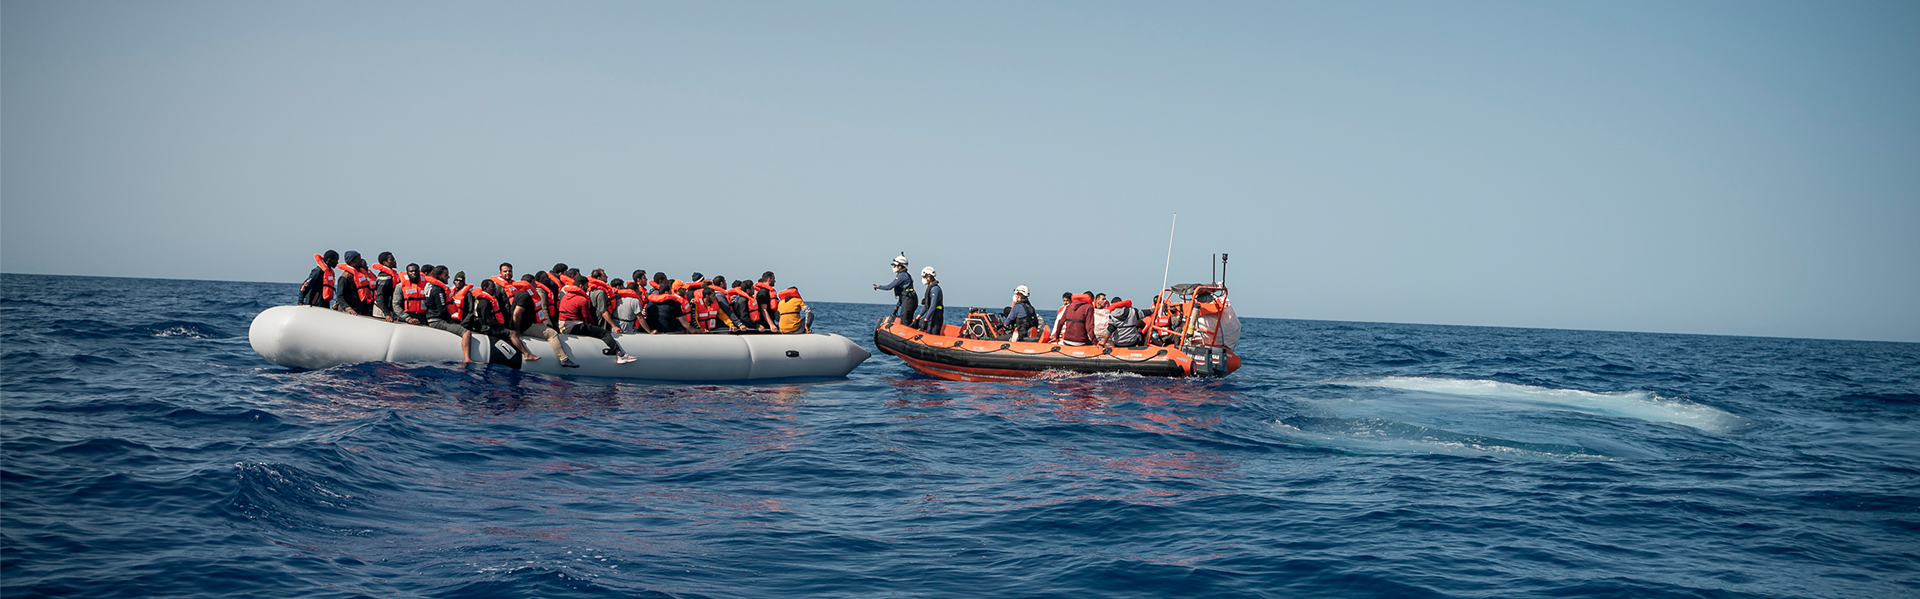 Ein Rettungsboot nähert sich auf dem Mittelmeer einem Schlauchboot mit Geflüchteten. | Copyright: Paul Lovis Wagner / Sea-Watch